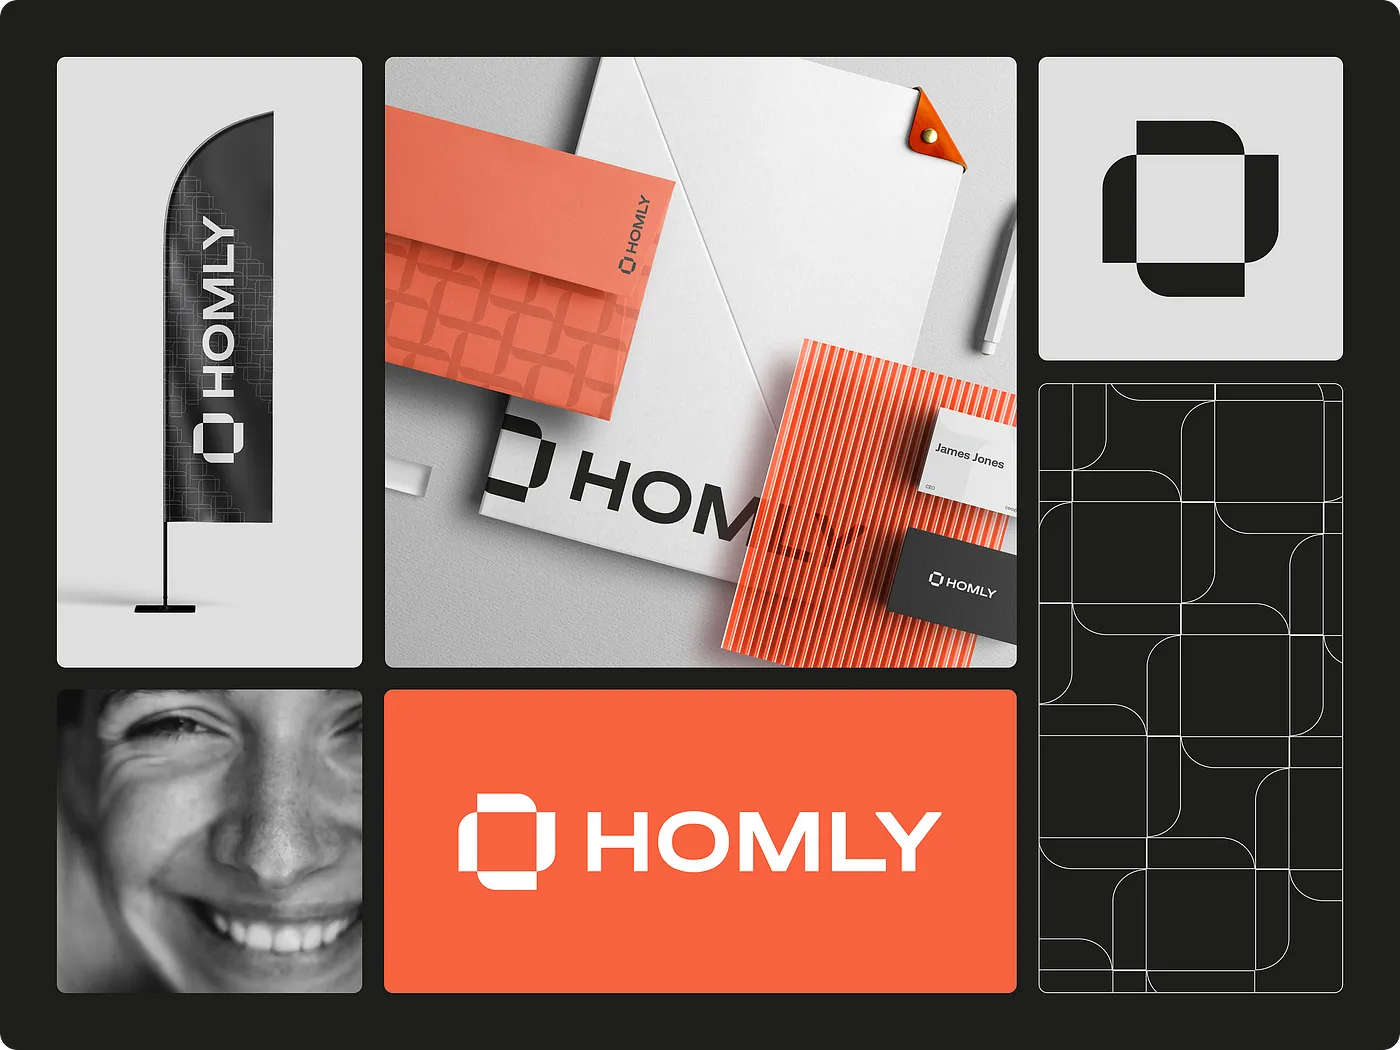 Homly — 房地产机构的标志和品牌标识